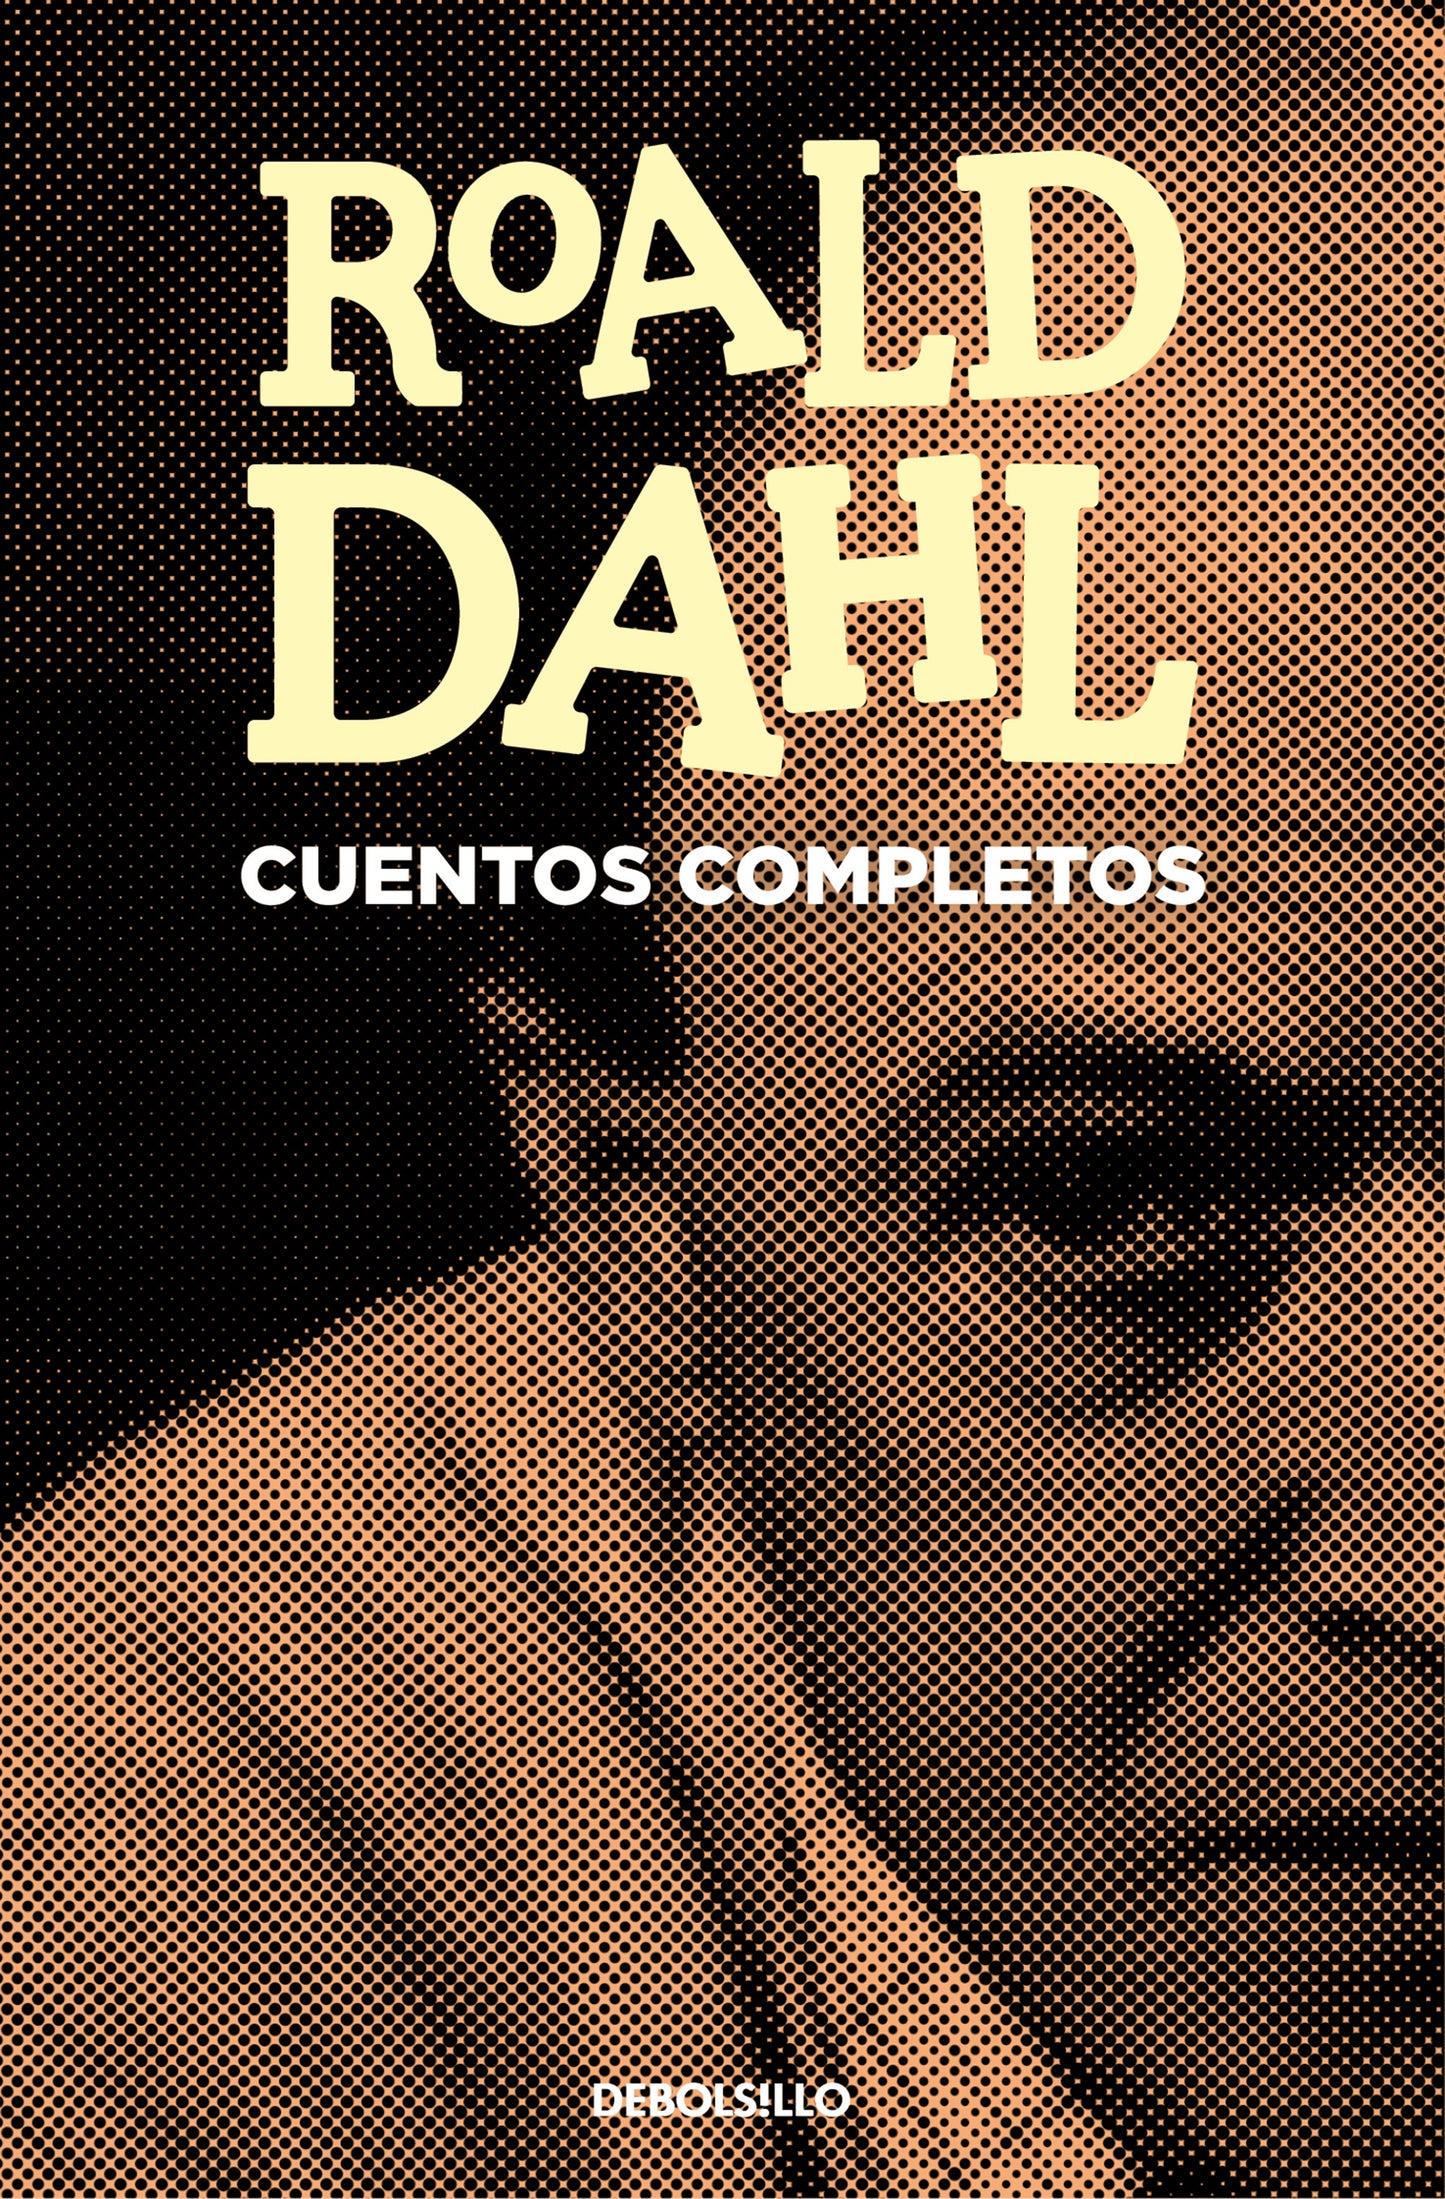 Cuentos completos - Roald Dahl